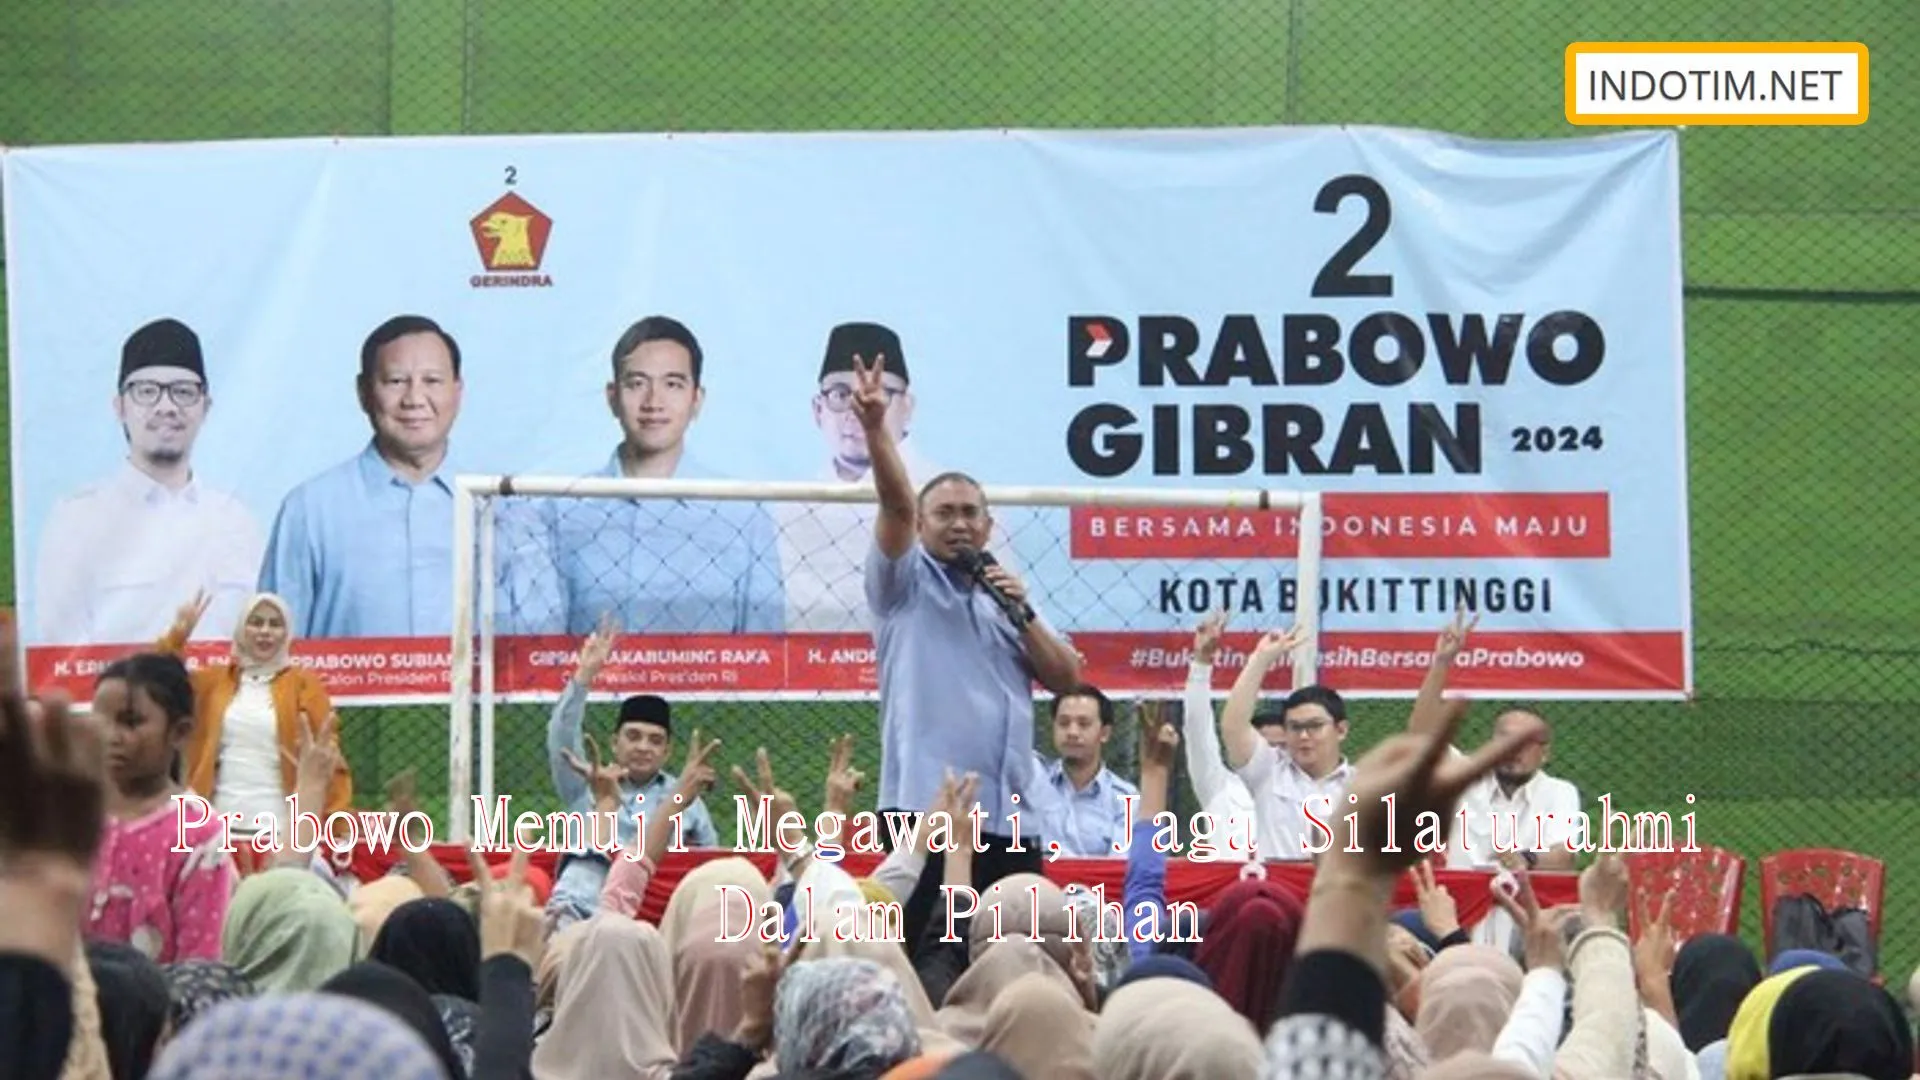 Prabowo Memuji Megawati, Jaga Silaturahmi Dalam Pilihan